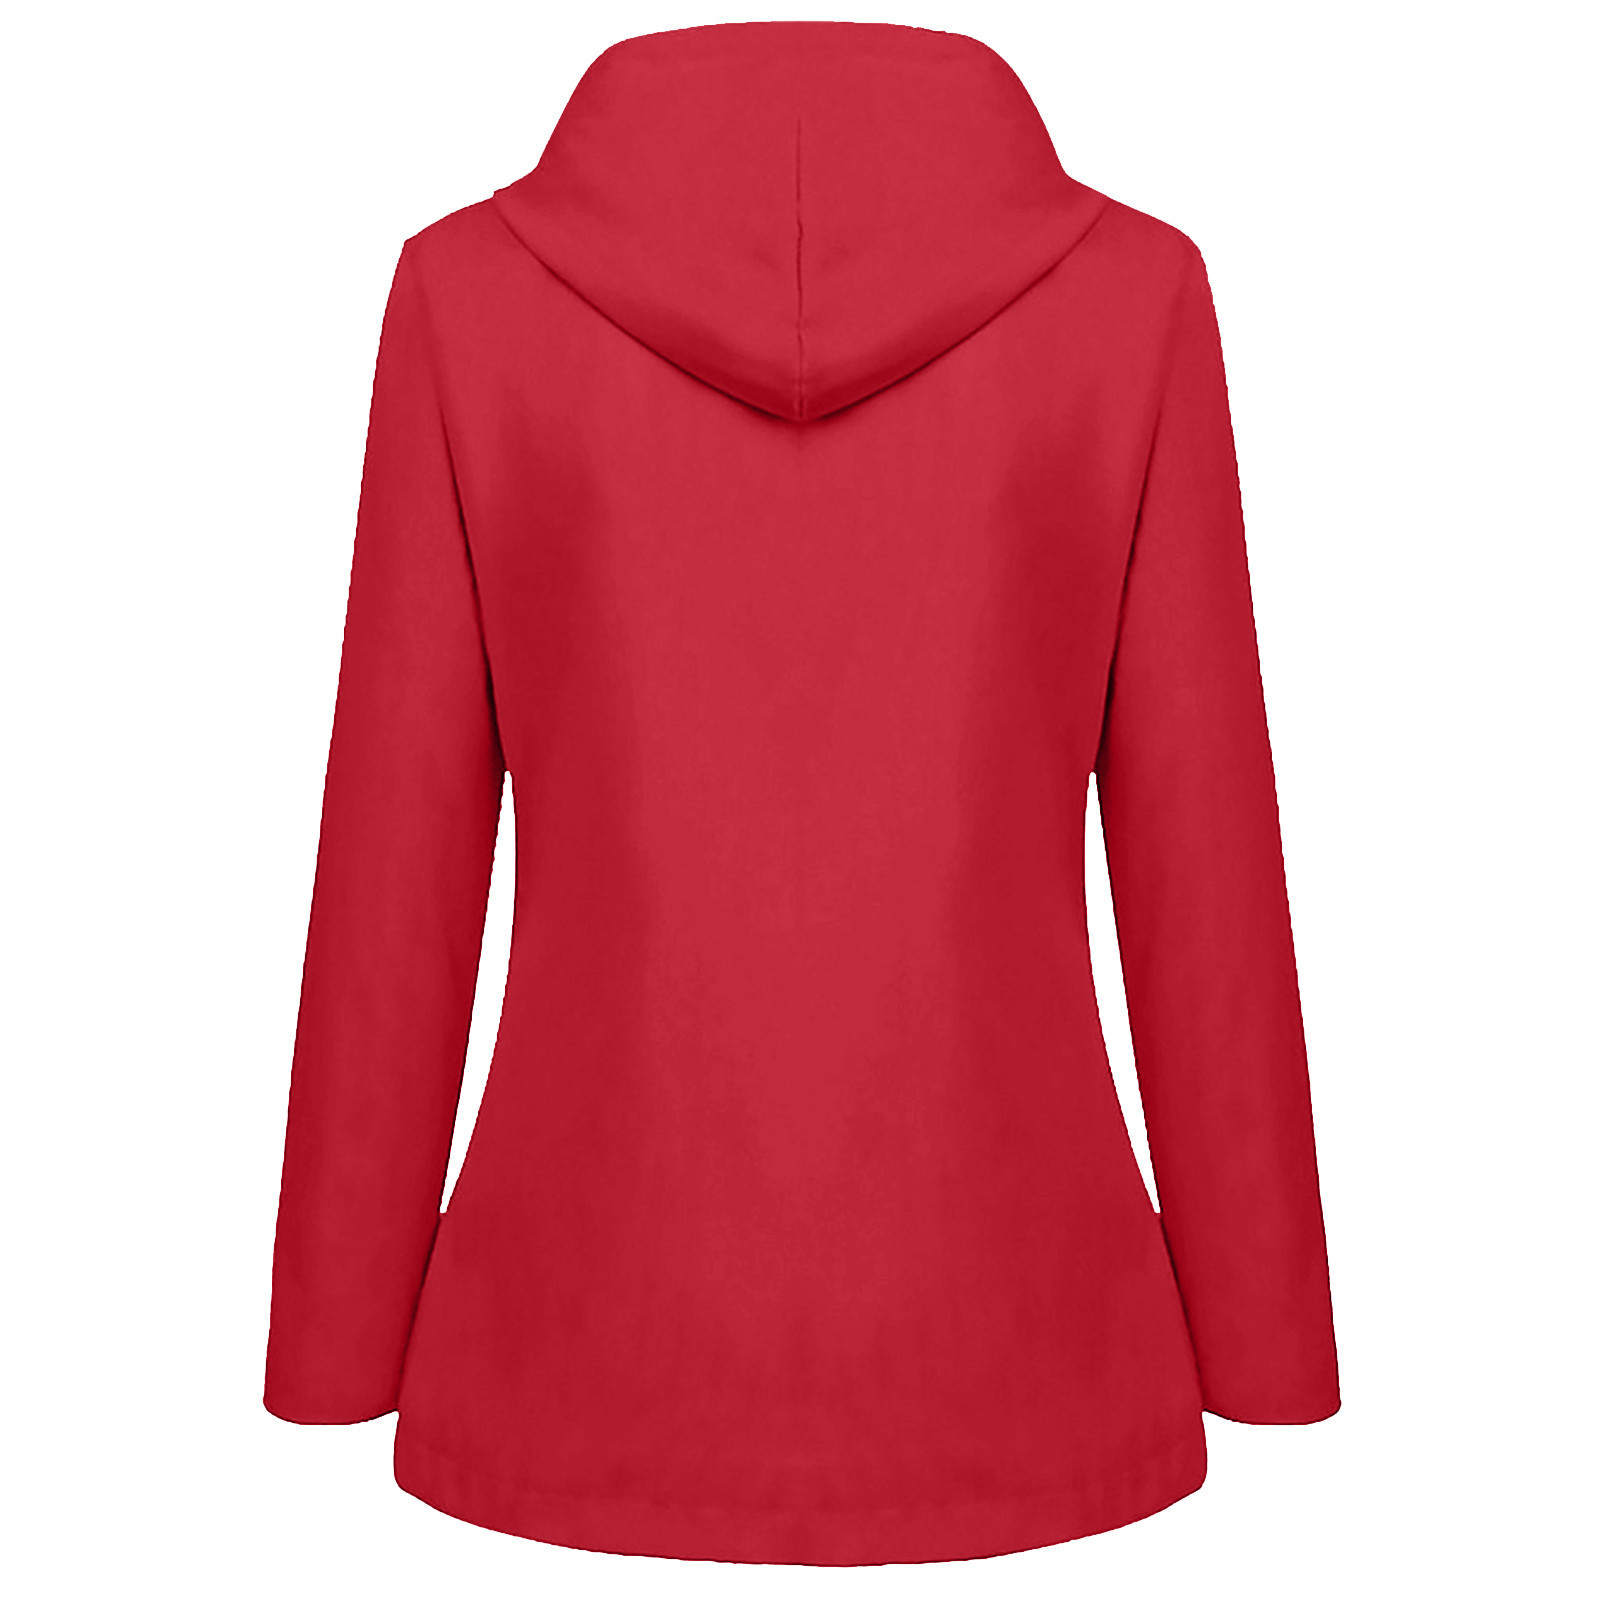 YOTAMI Winter Coats for Women Plus Size Fleece Outwear Jackets Red ...